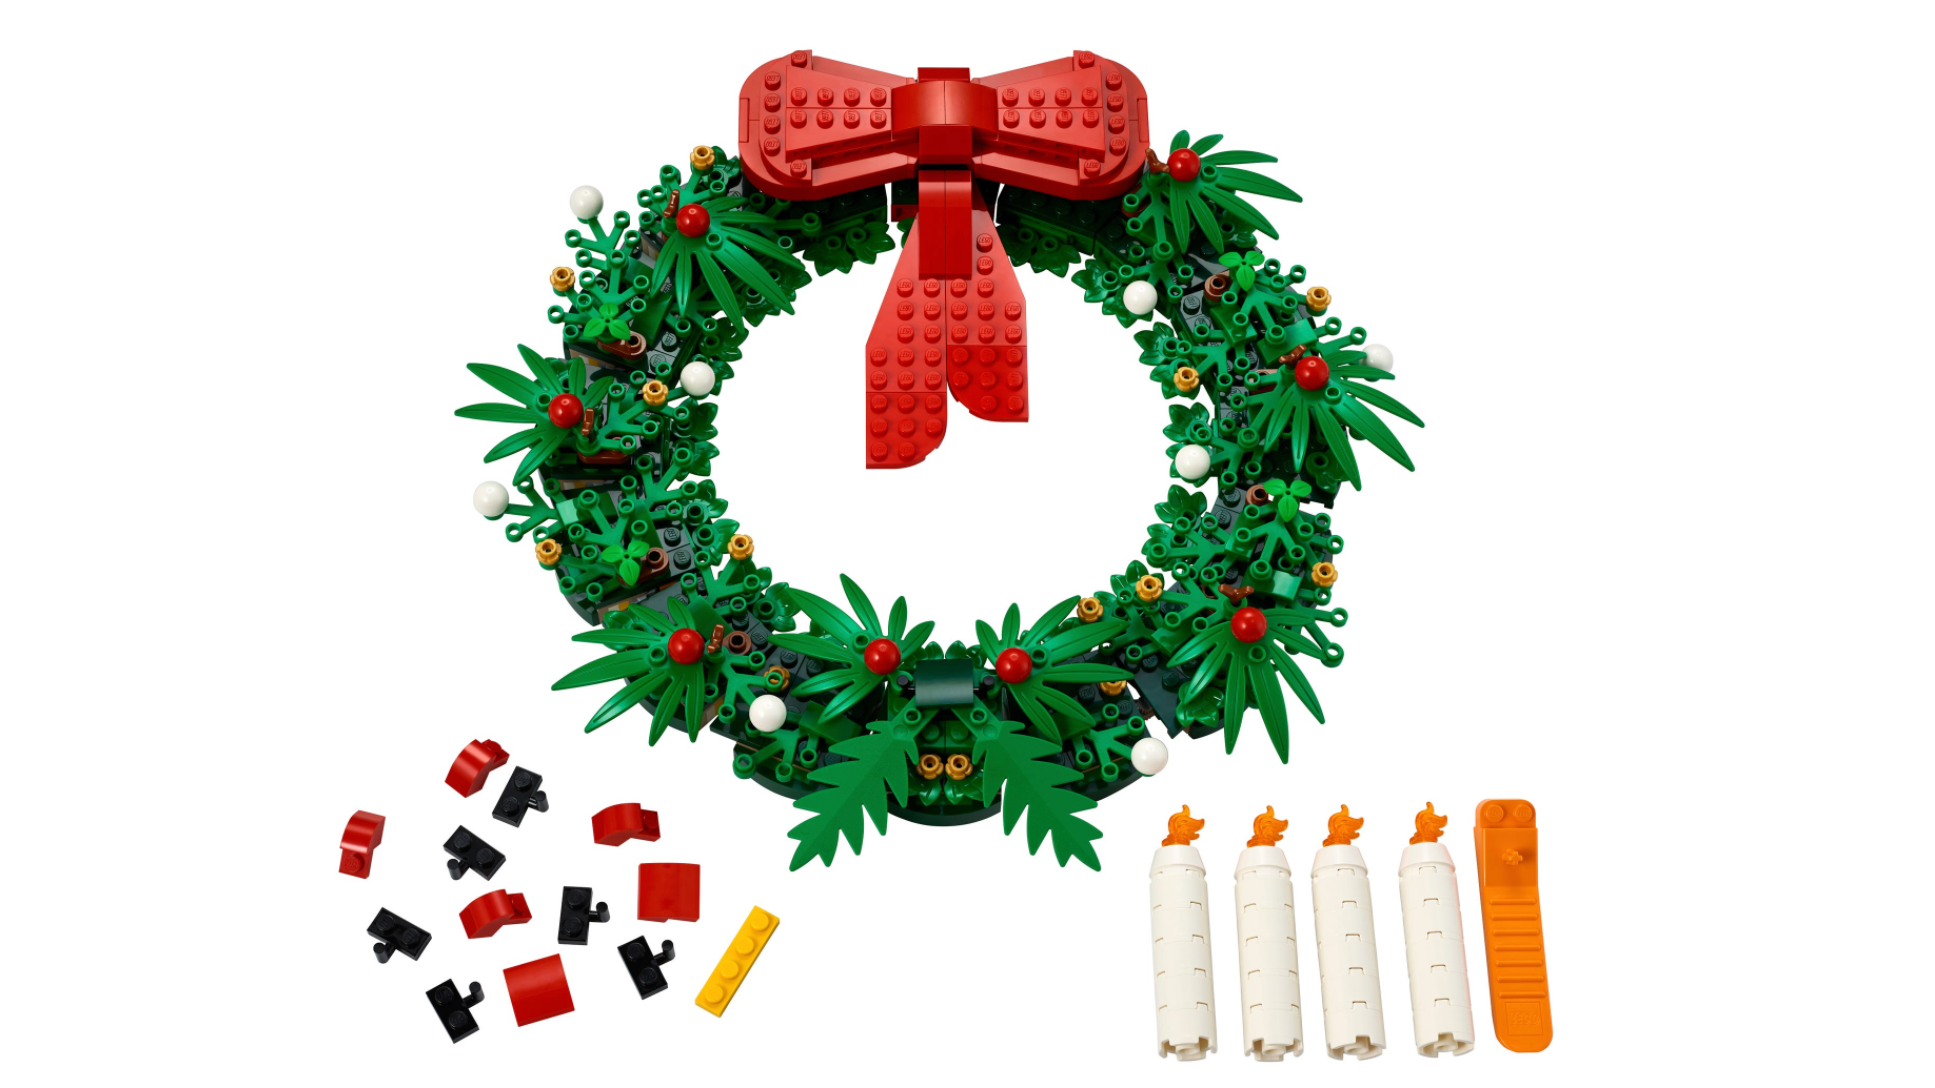 Lego's holiday wreath.  (Image: Lego)